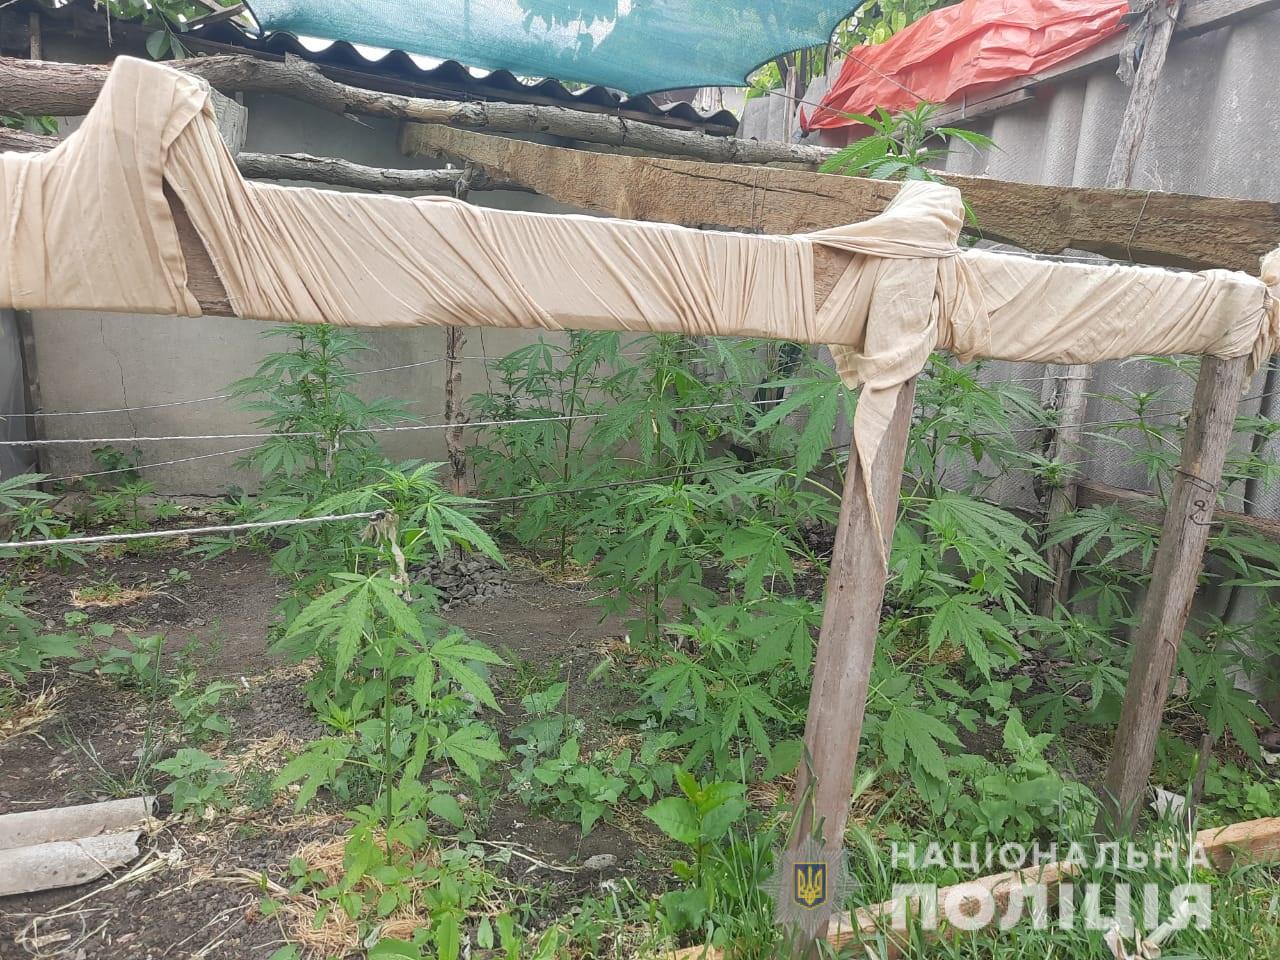 Житель Болградской громады вырастил плантацию конопли у себя во дворе и оборудованном подвале